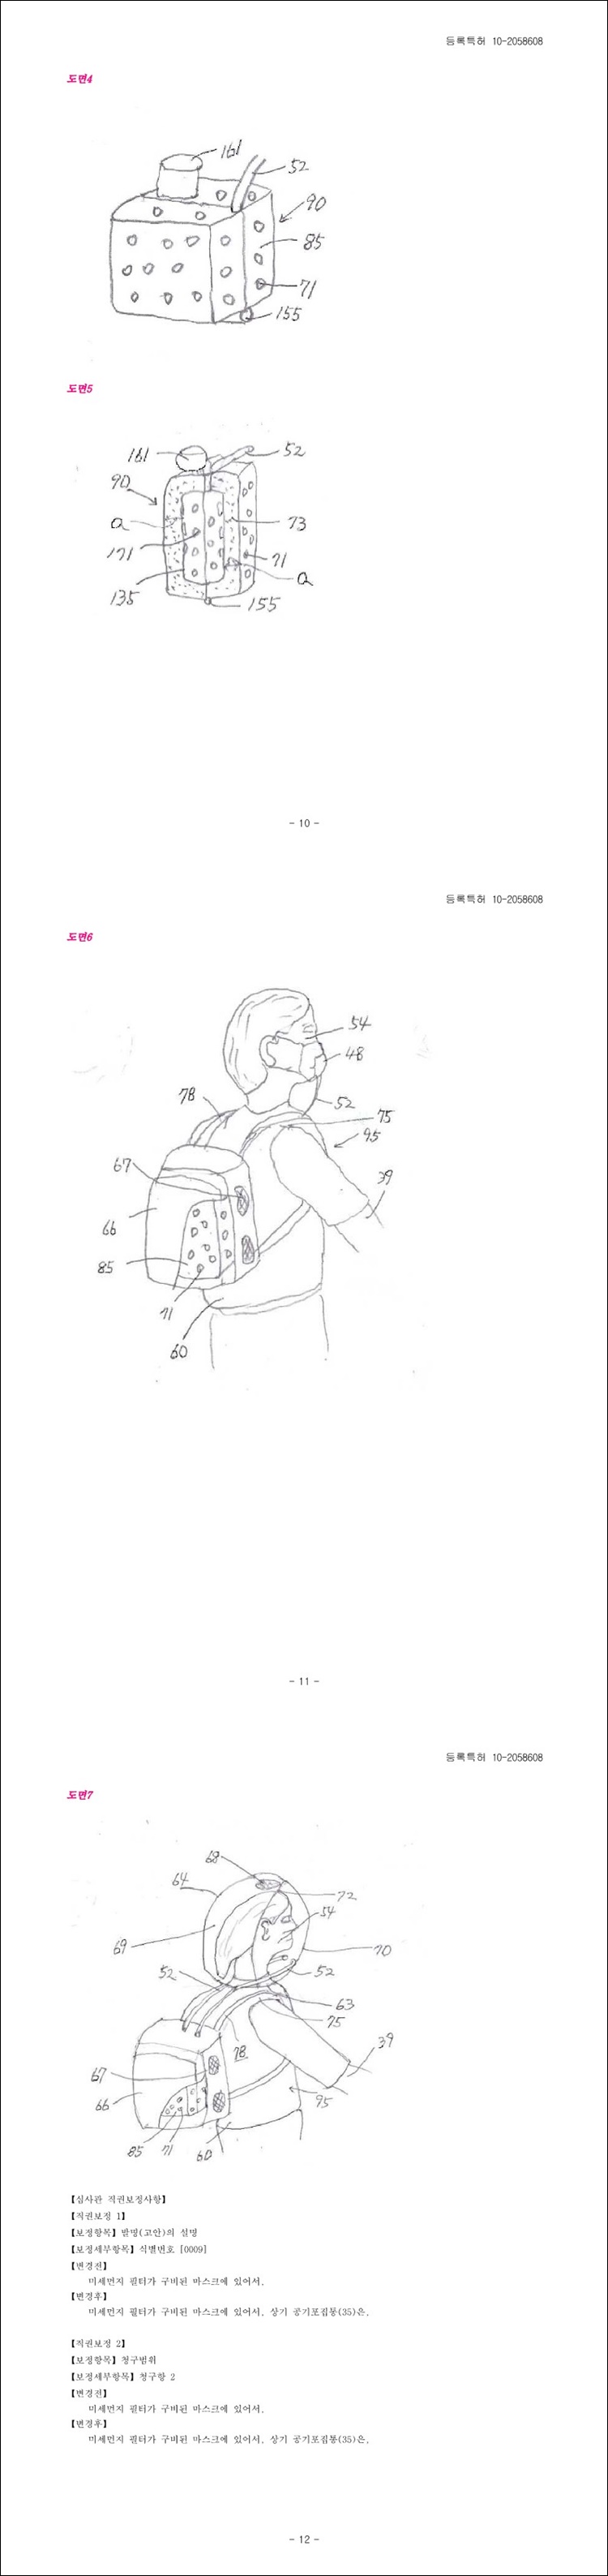 특허 제10-2058608호(미세먼지 필터가 구비된 마스크, 민병이, 